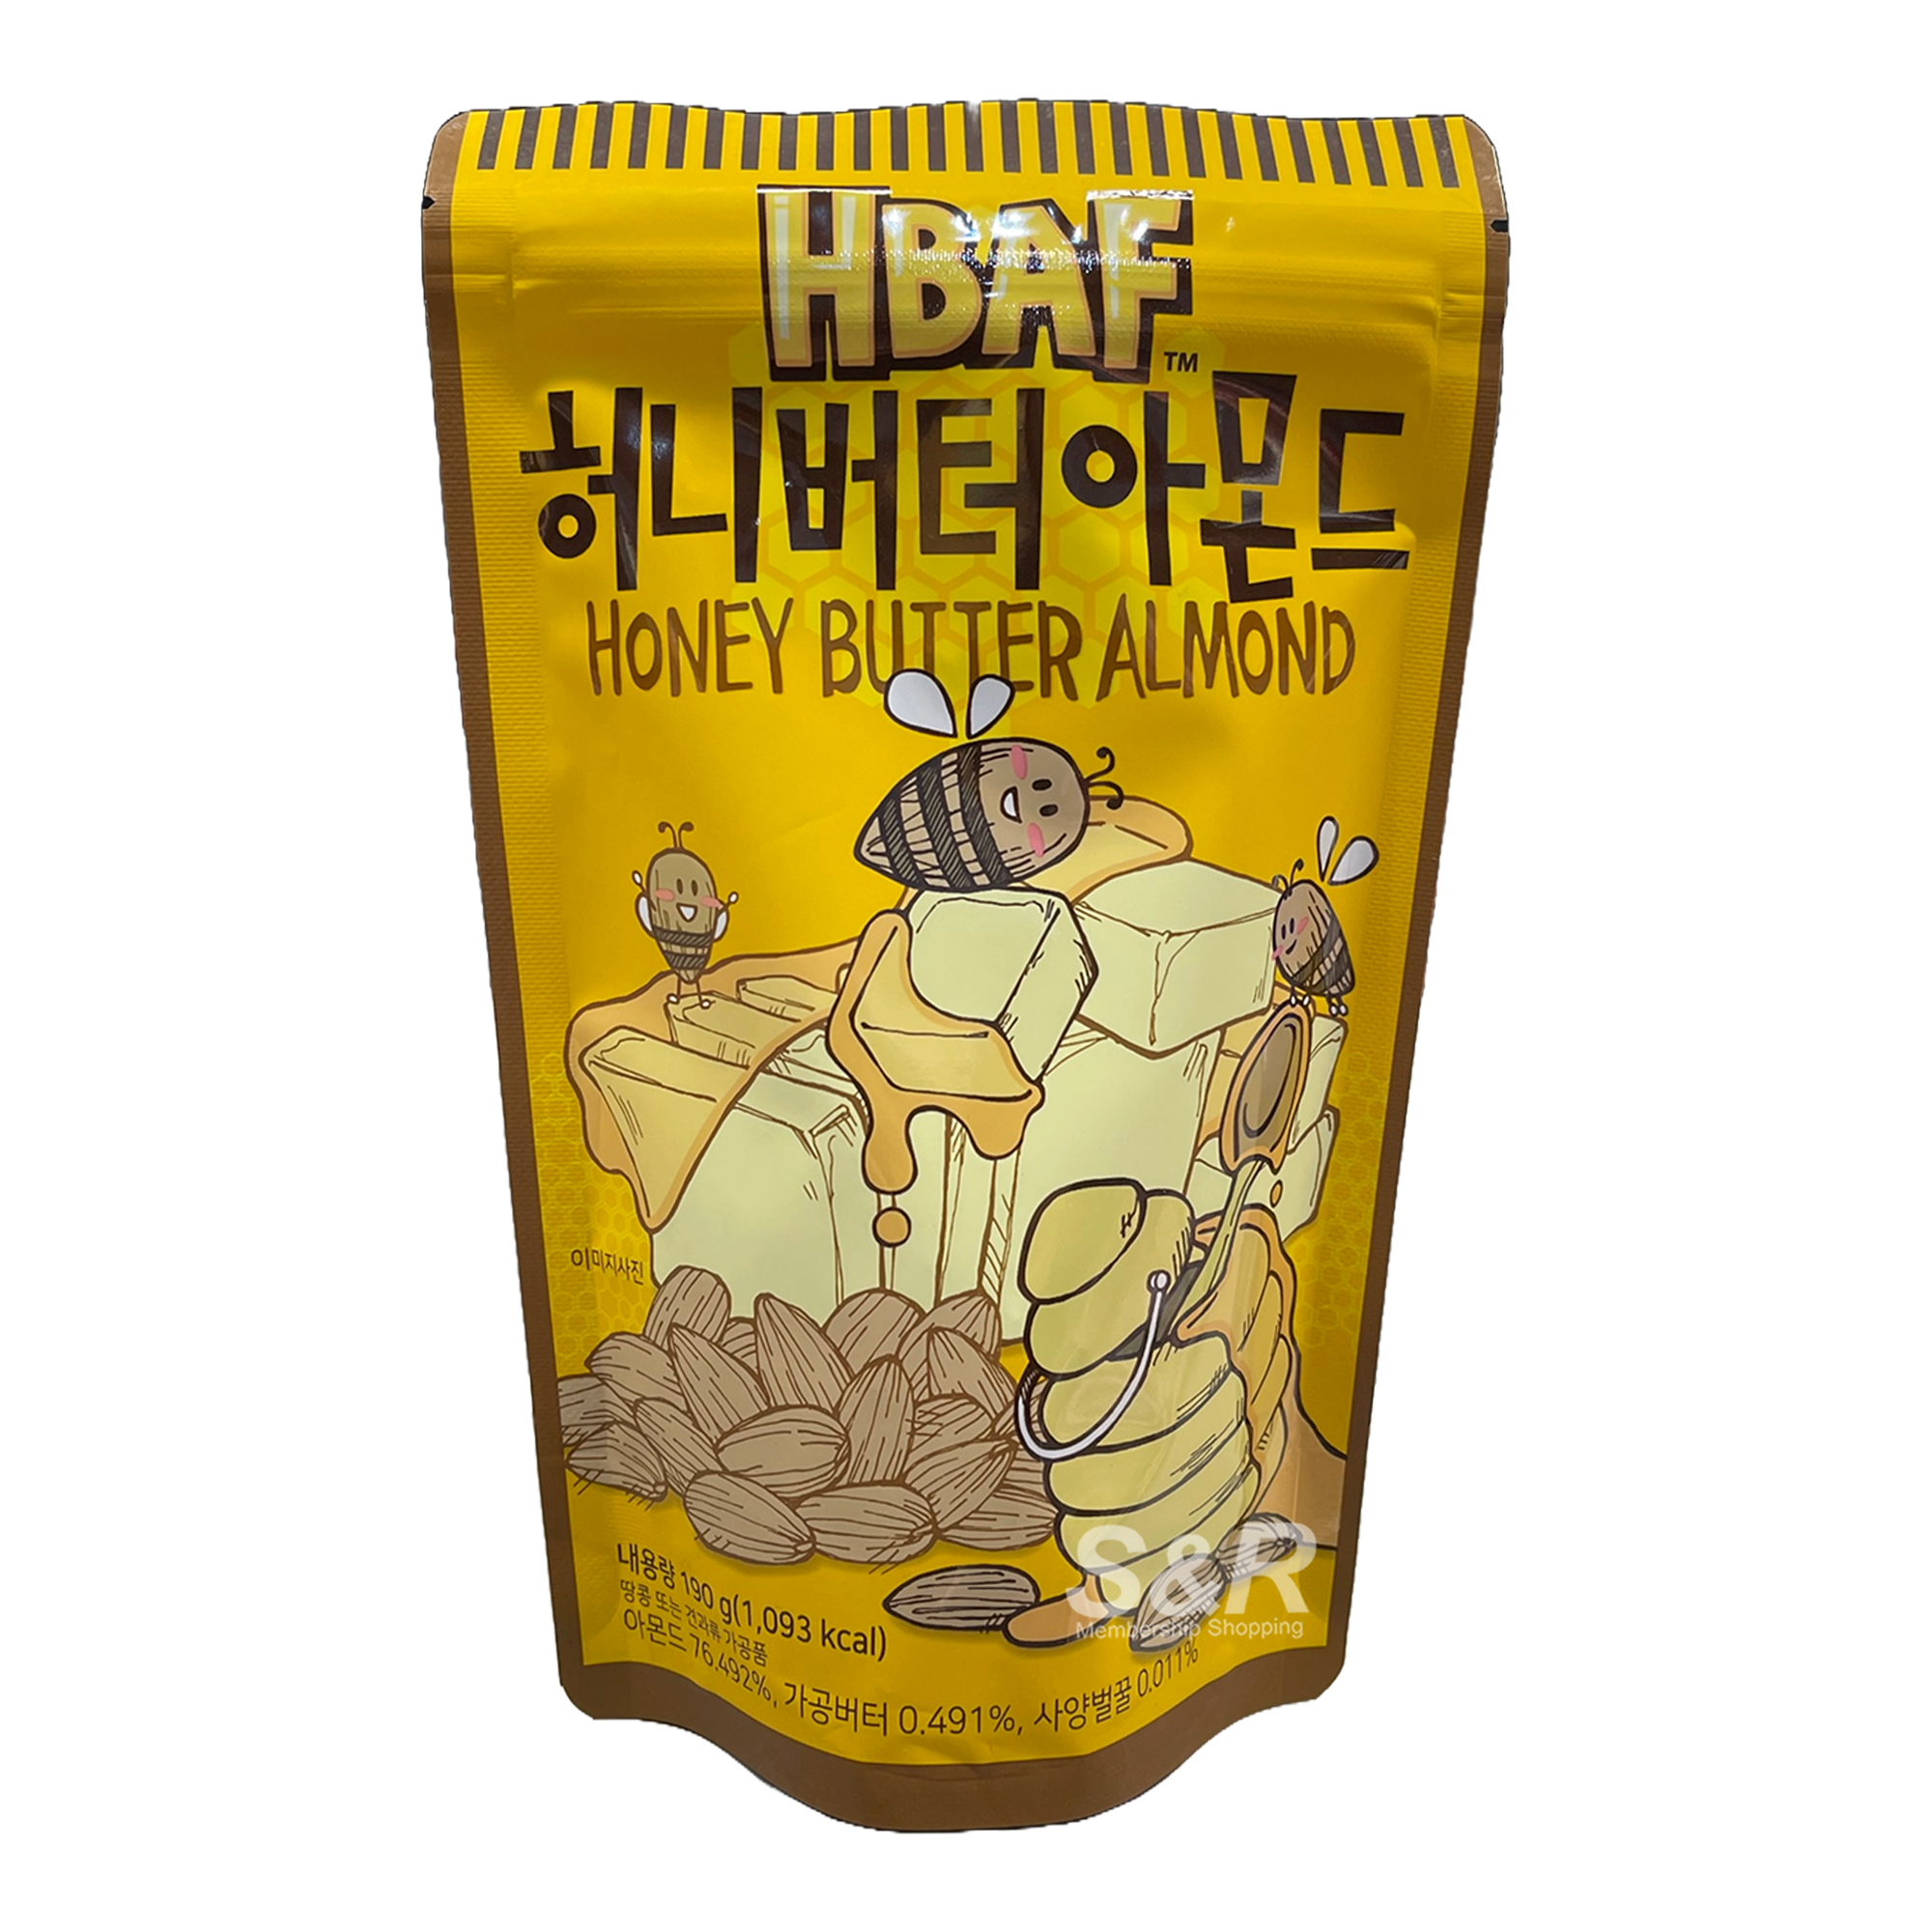 HBAF Honey Butter Almond 190g